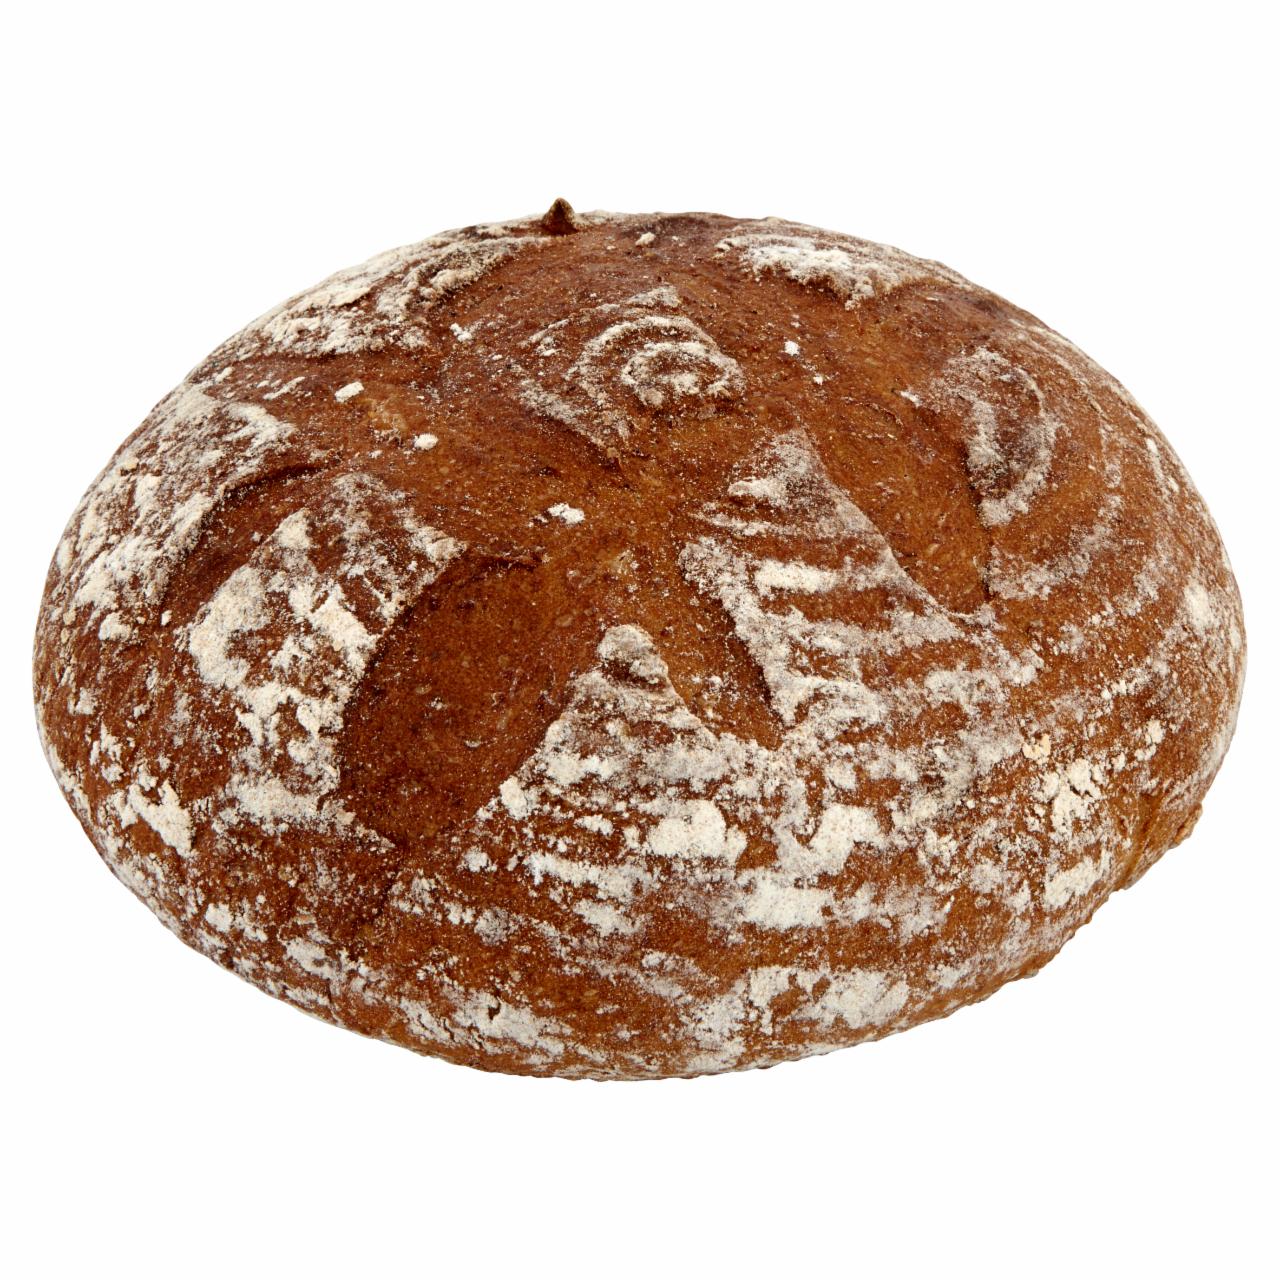 Képek - Jókenyér burgonyás kenyér 0,75 kg